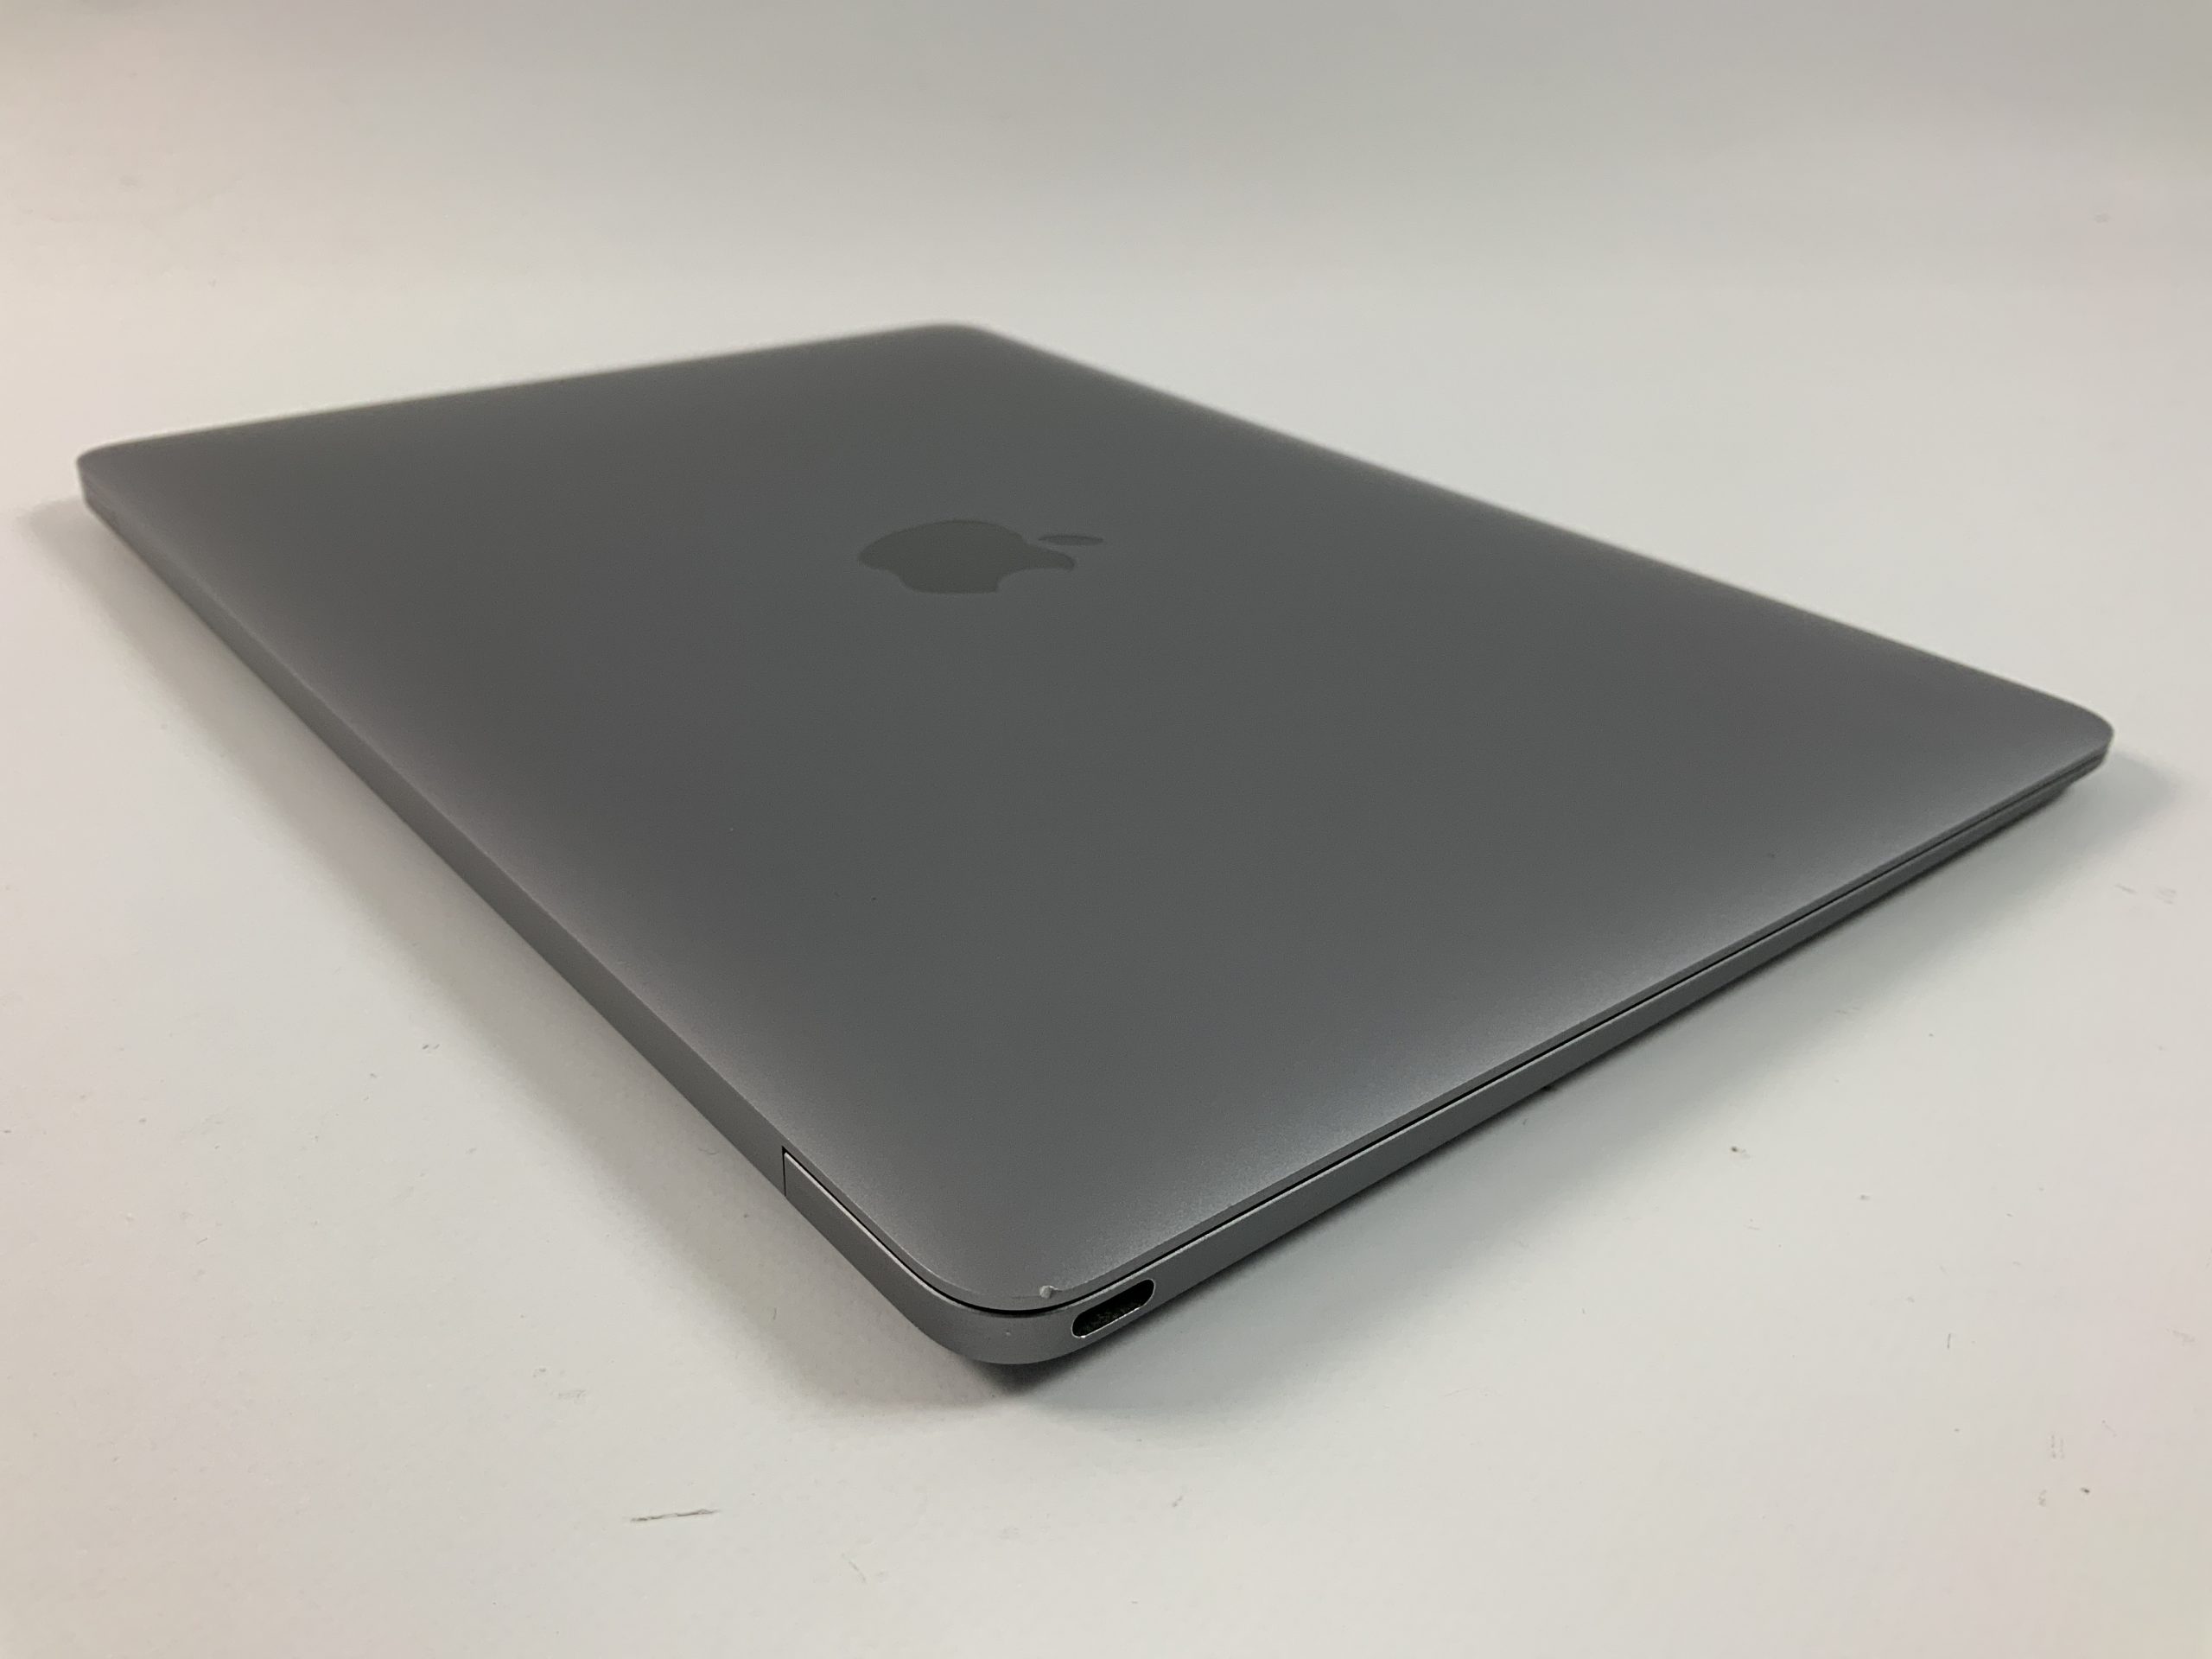 MacBook 12" Mid 2017 (Intel Core i5 1.3 GHz 8 GB RAM 512 GB SSD), Space Gray, Intel Core i5 1.3 GHz, 8 GB RAM, 512 GB SSD, Afbeelding 4